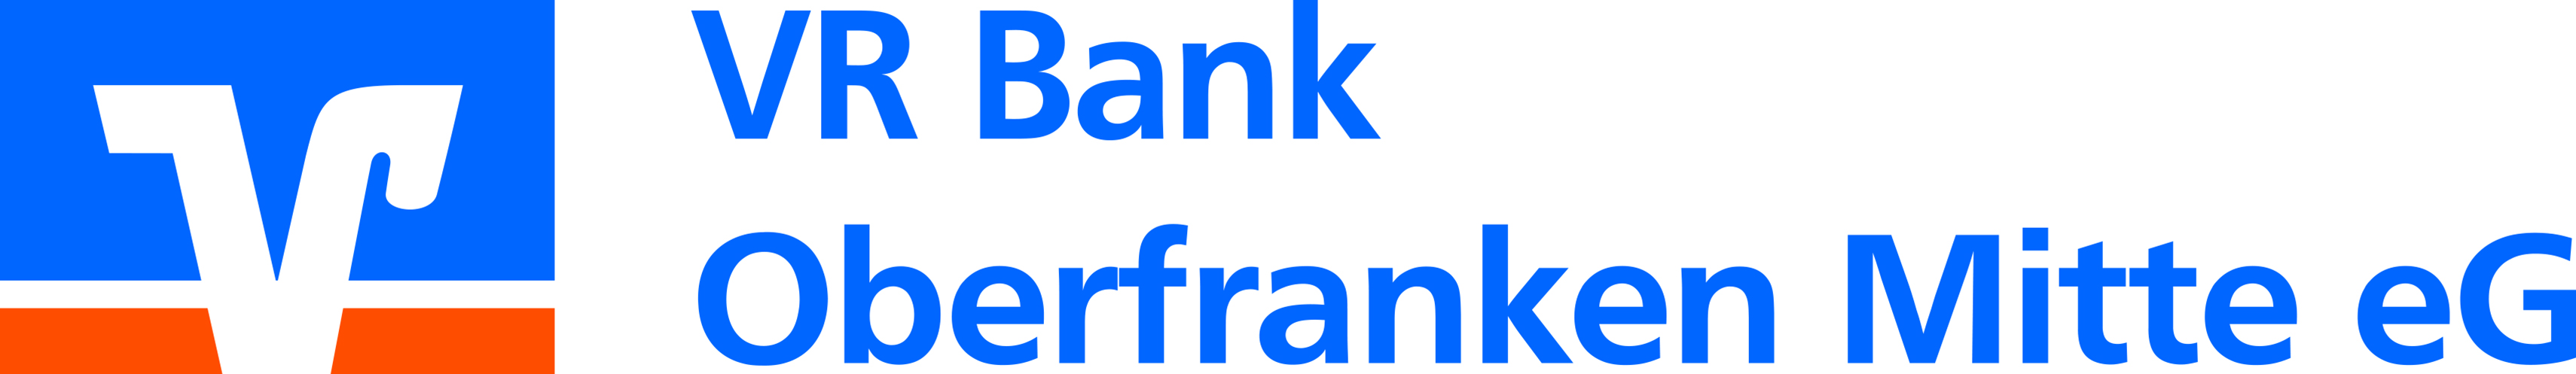 Logo-VR Bank Oberfranken Mitte AG